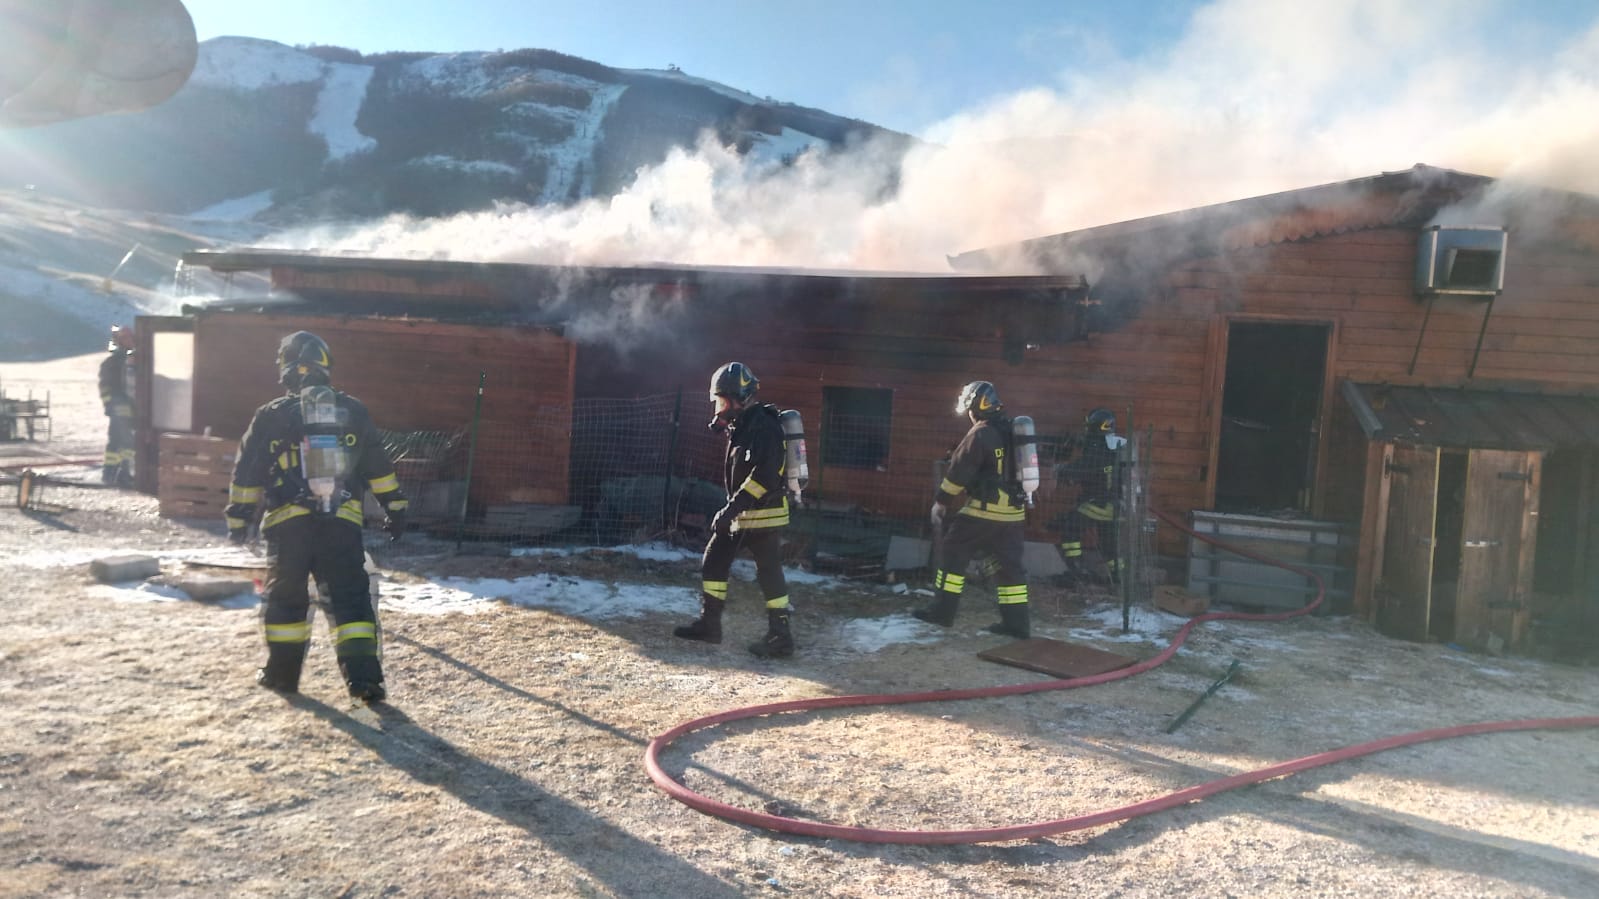 Incendio in uno chalet a Campo Felice, quattro squadre di vigili del fuoco impegnate nello spegnimento